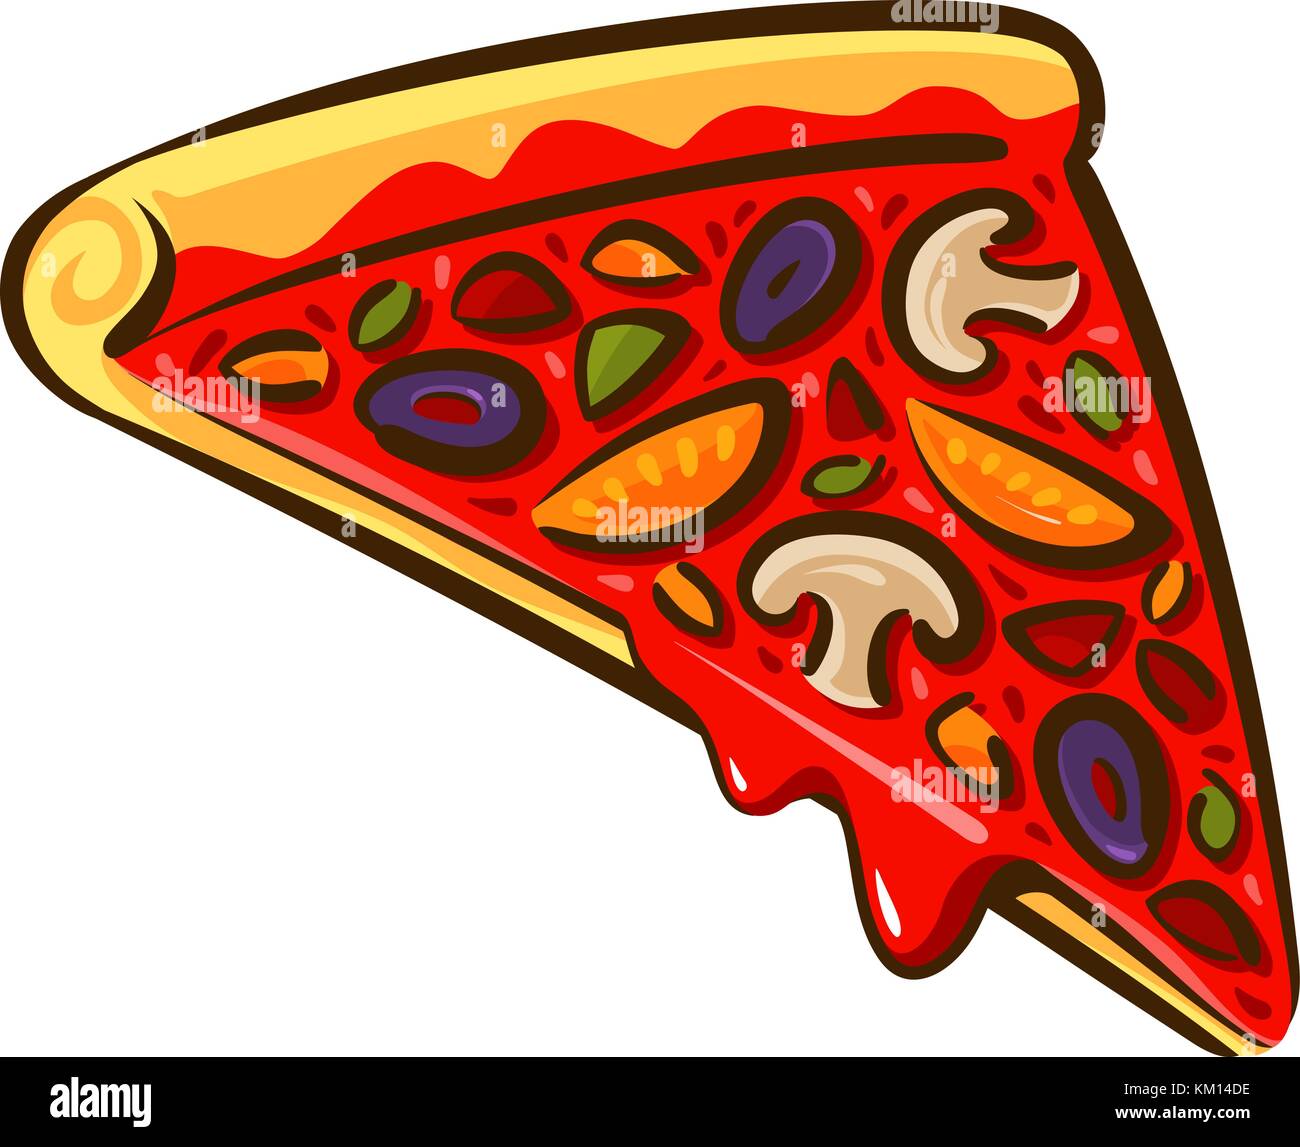 Fetta di pizza. Cucina italiana, pizzeria, cottura in forno. Illustrazione vettoriale dei cartoni animati Illustrazione Vettoriale